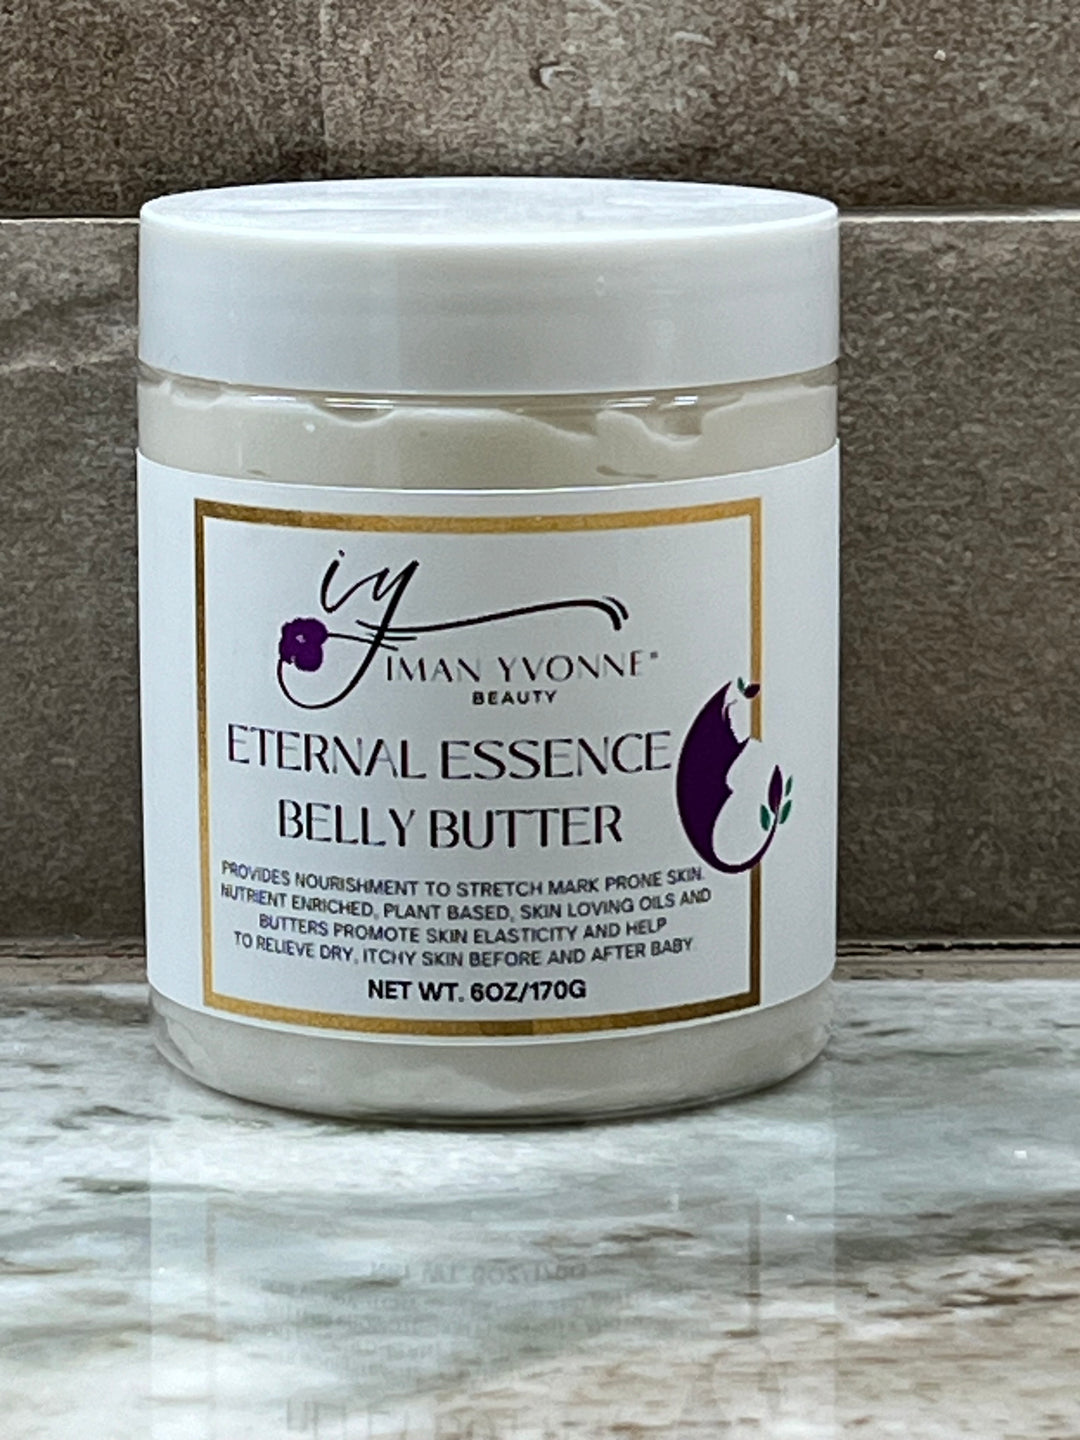 Eternal Essence Belly Butter